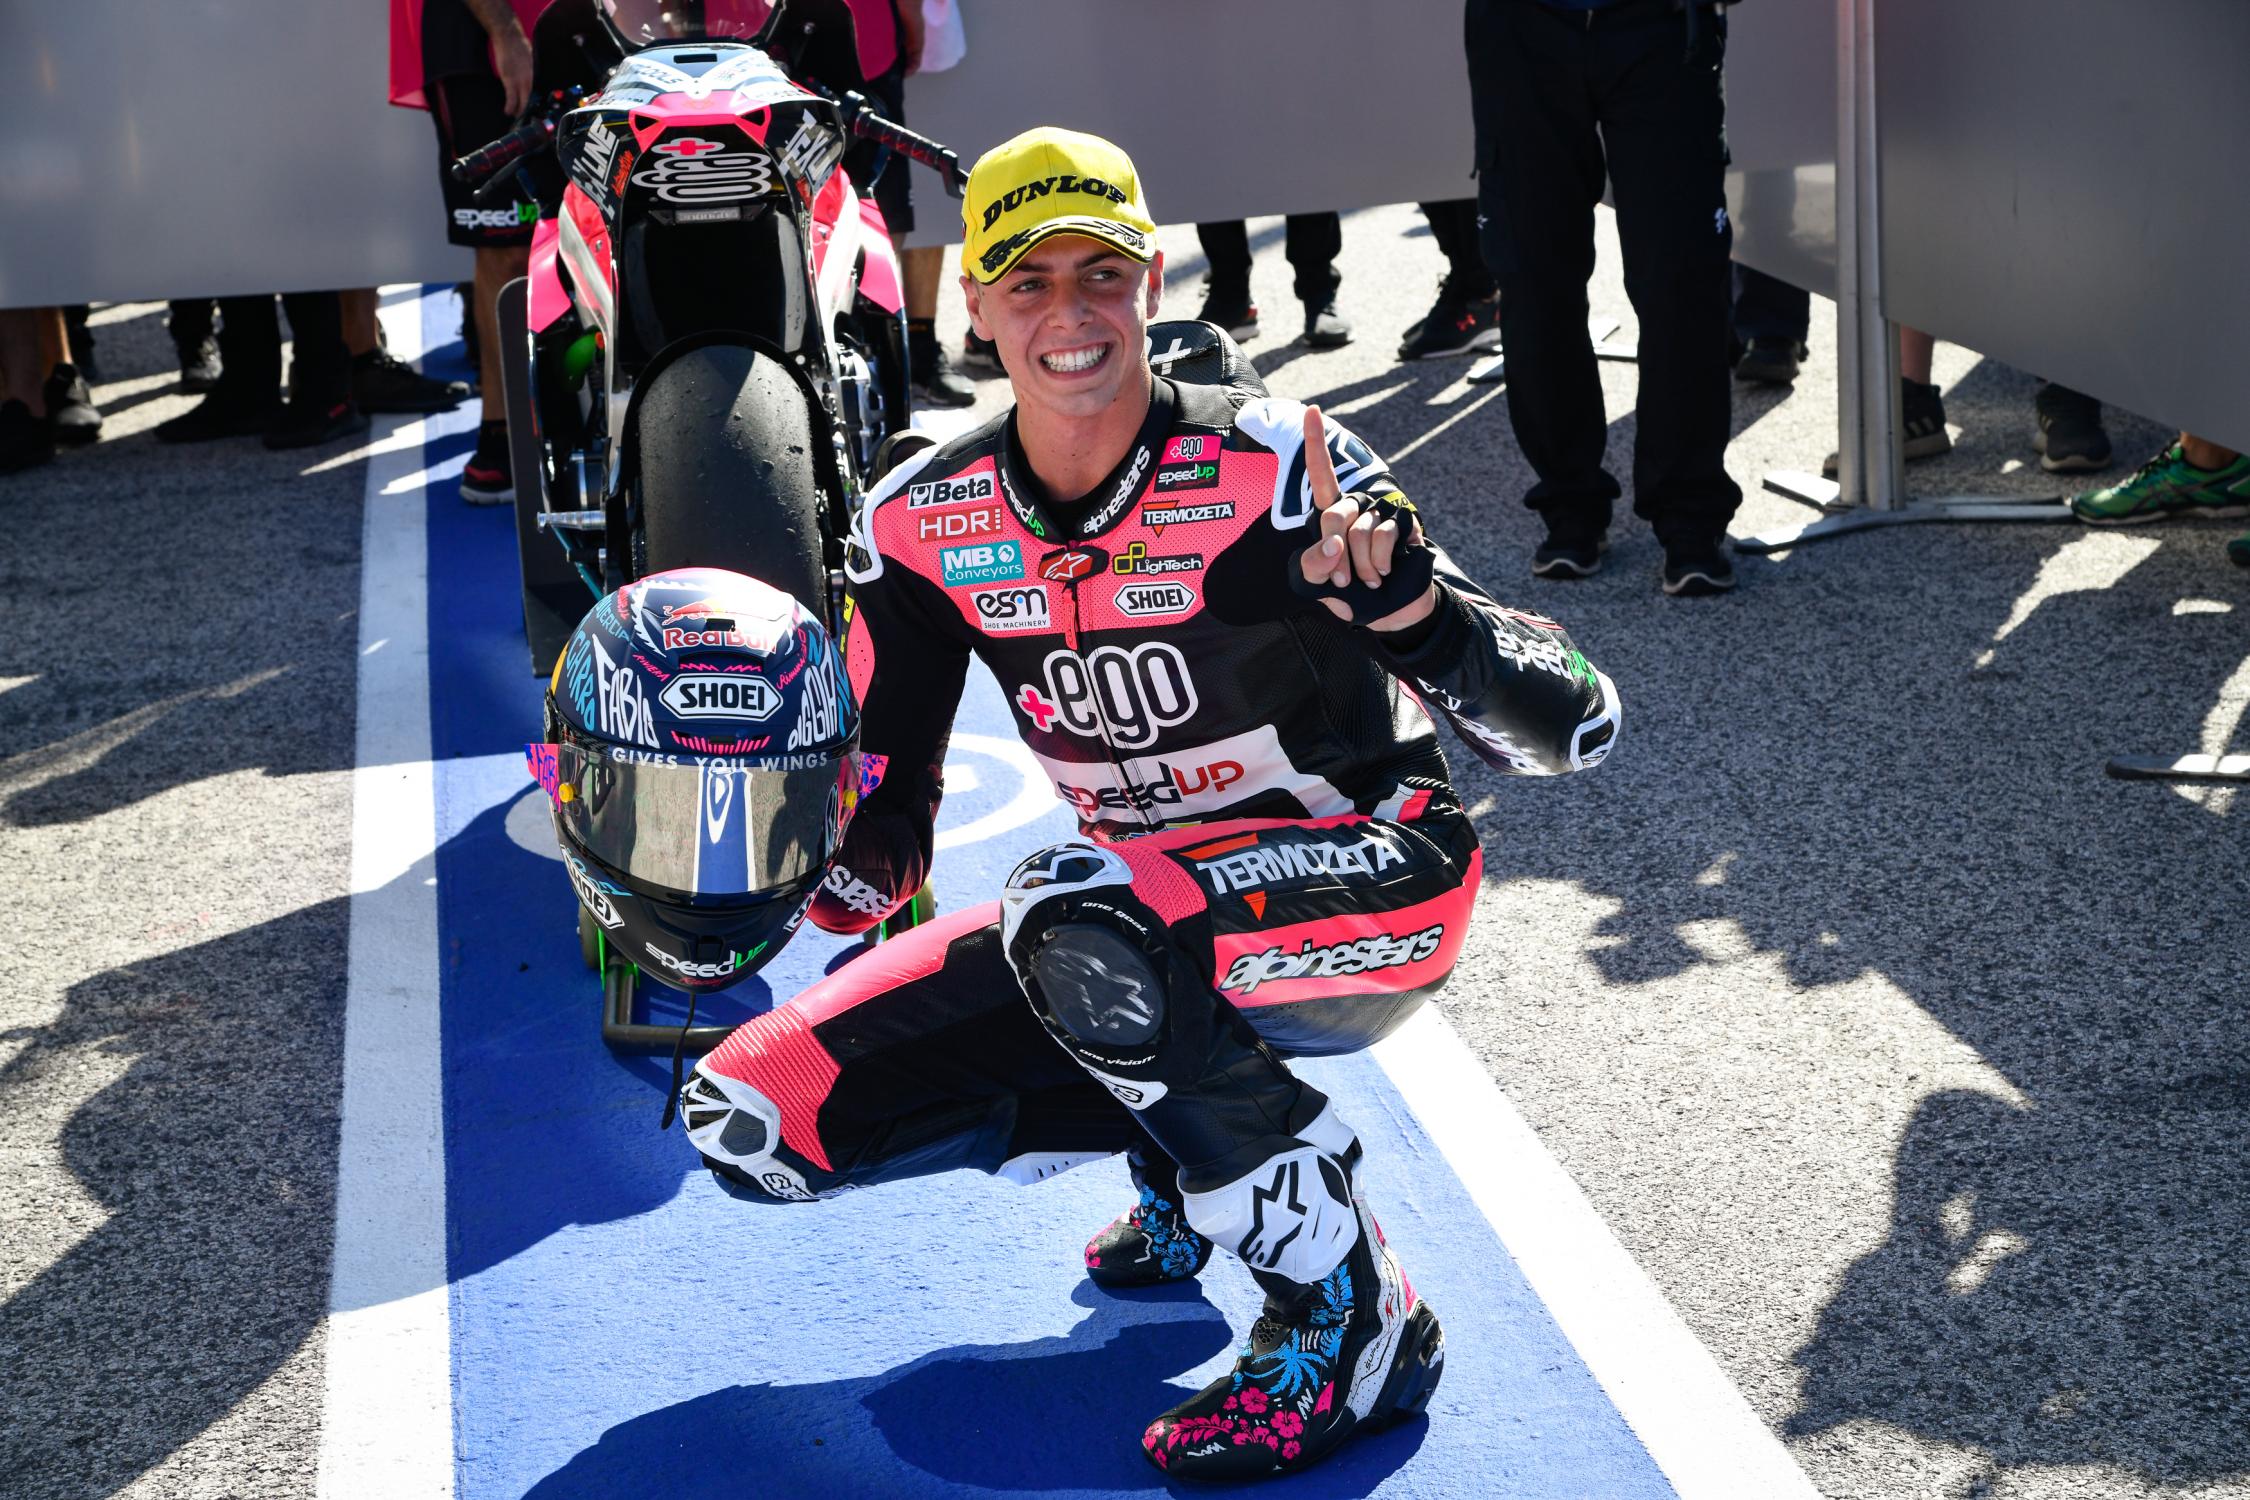 Moto 2 em Misano, Fabio di Giannantonio conquista sua primeira pole position de sua carreira